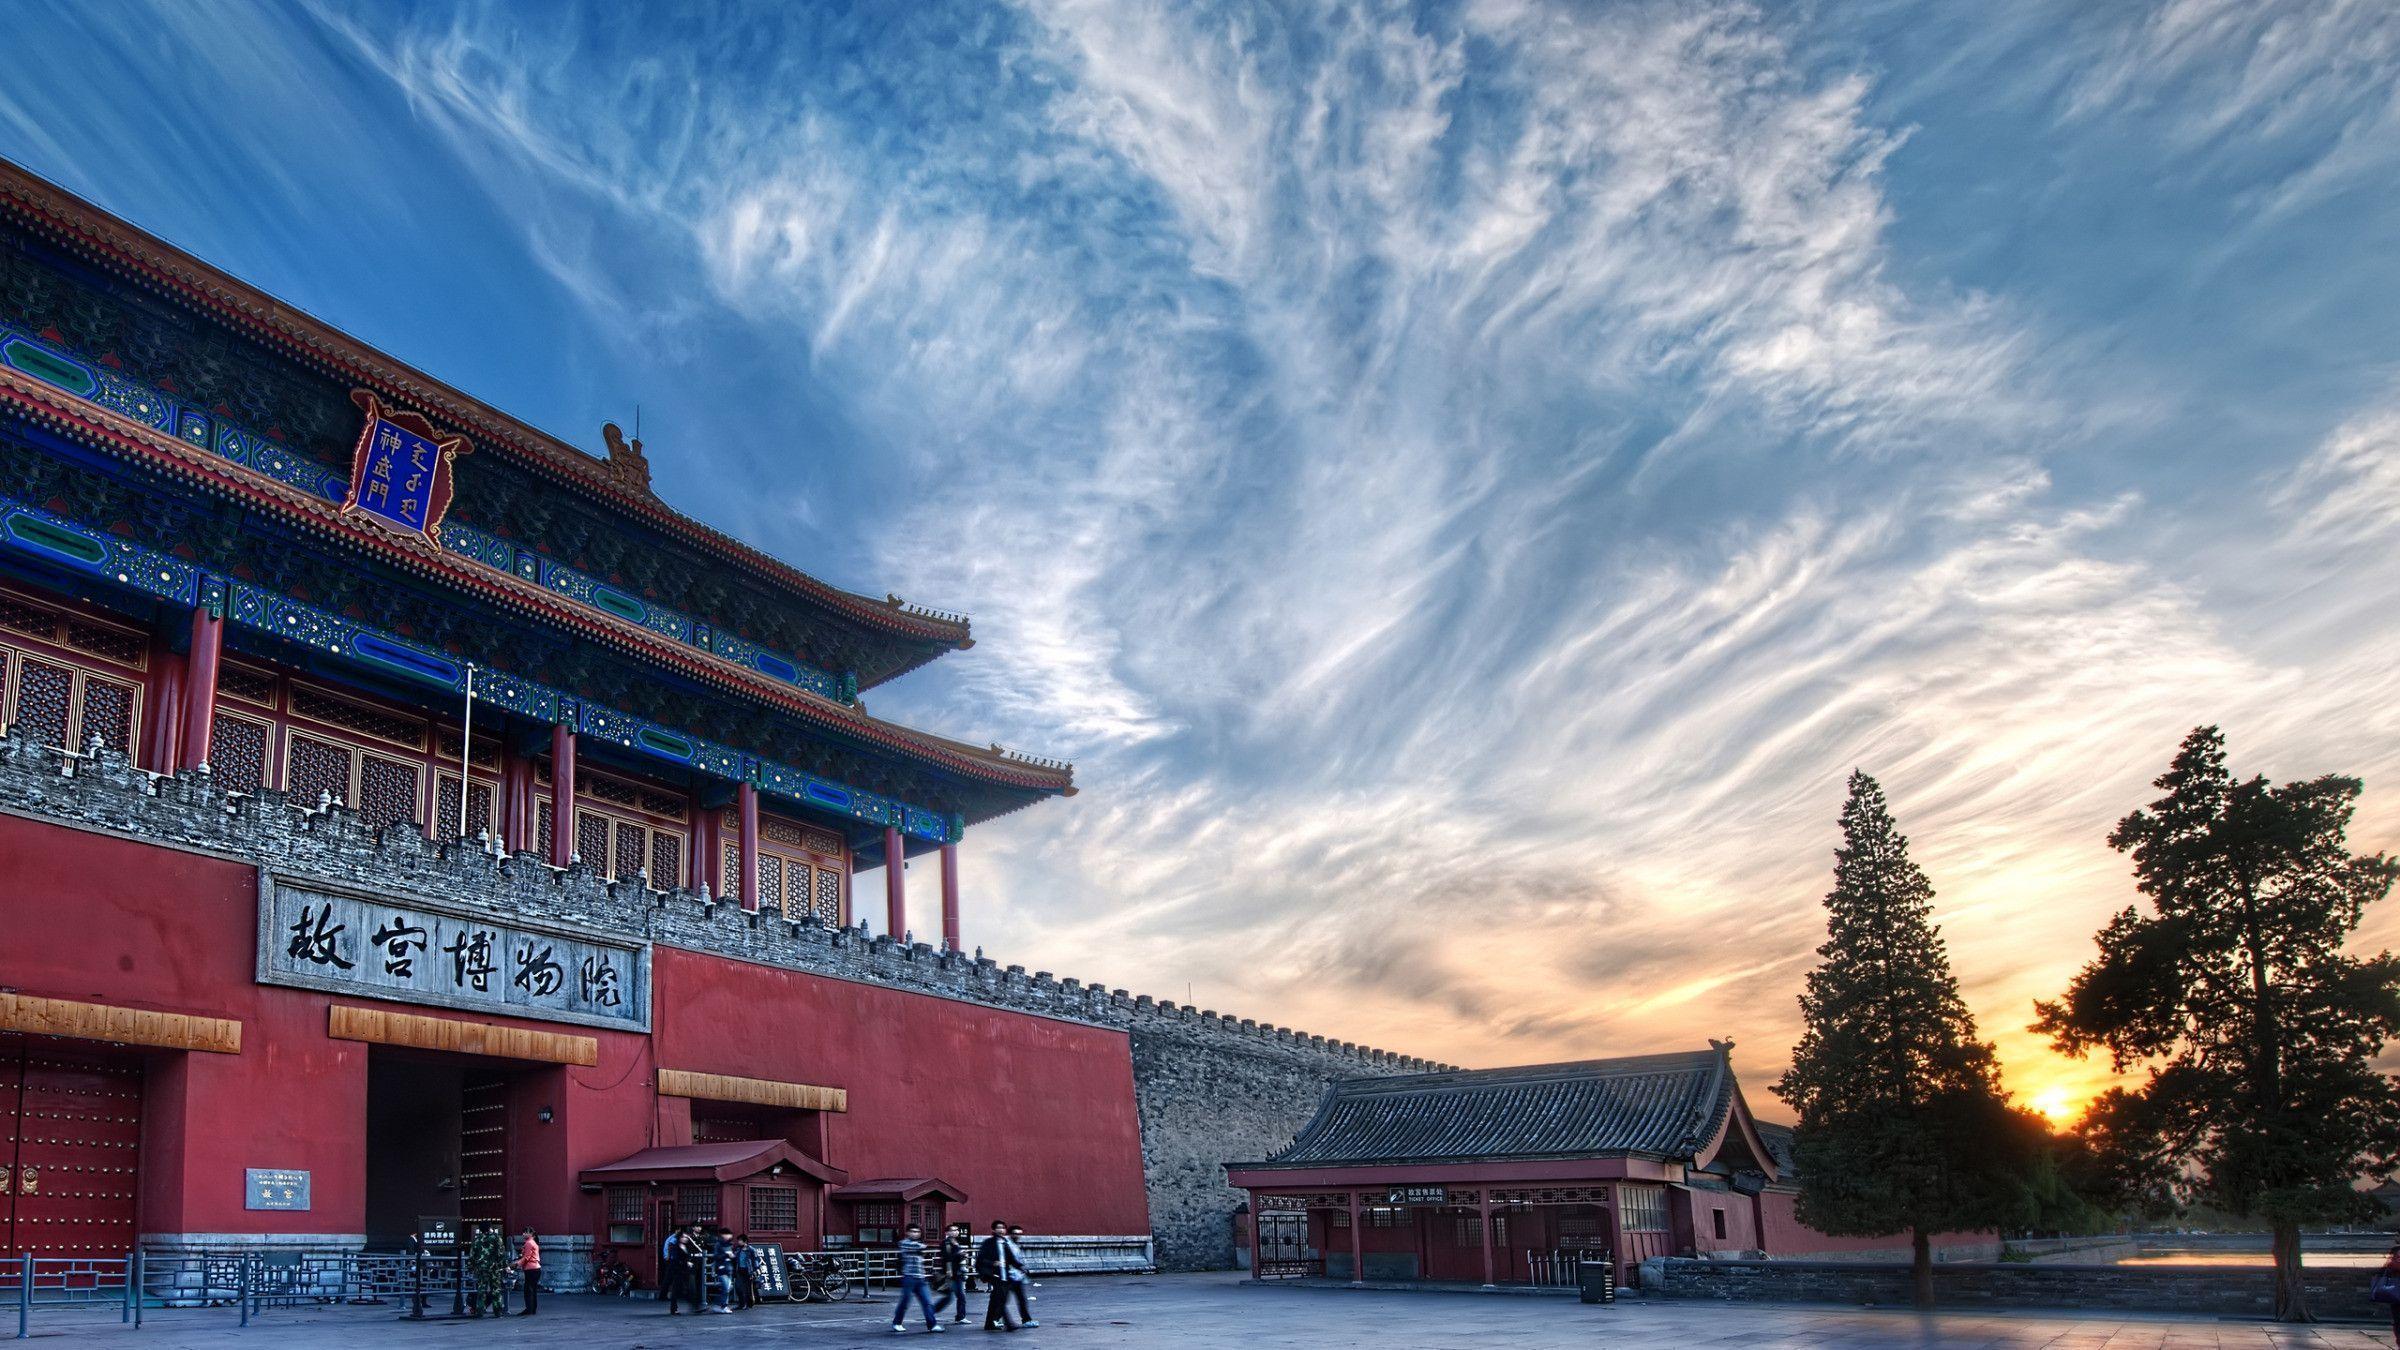 Approaching the Forbidden City widescreen wallpaper. Wide